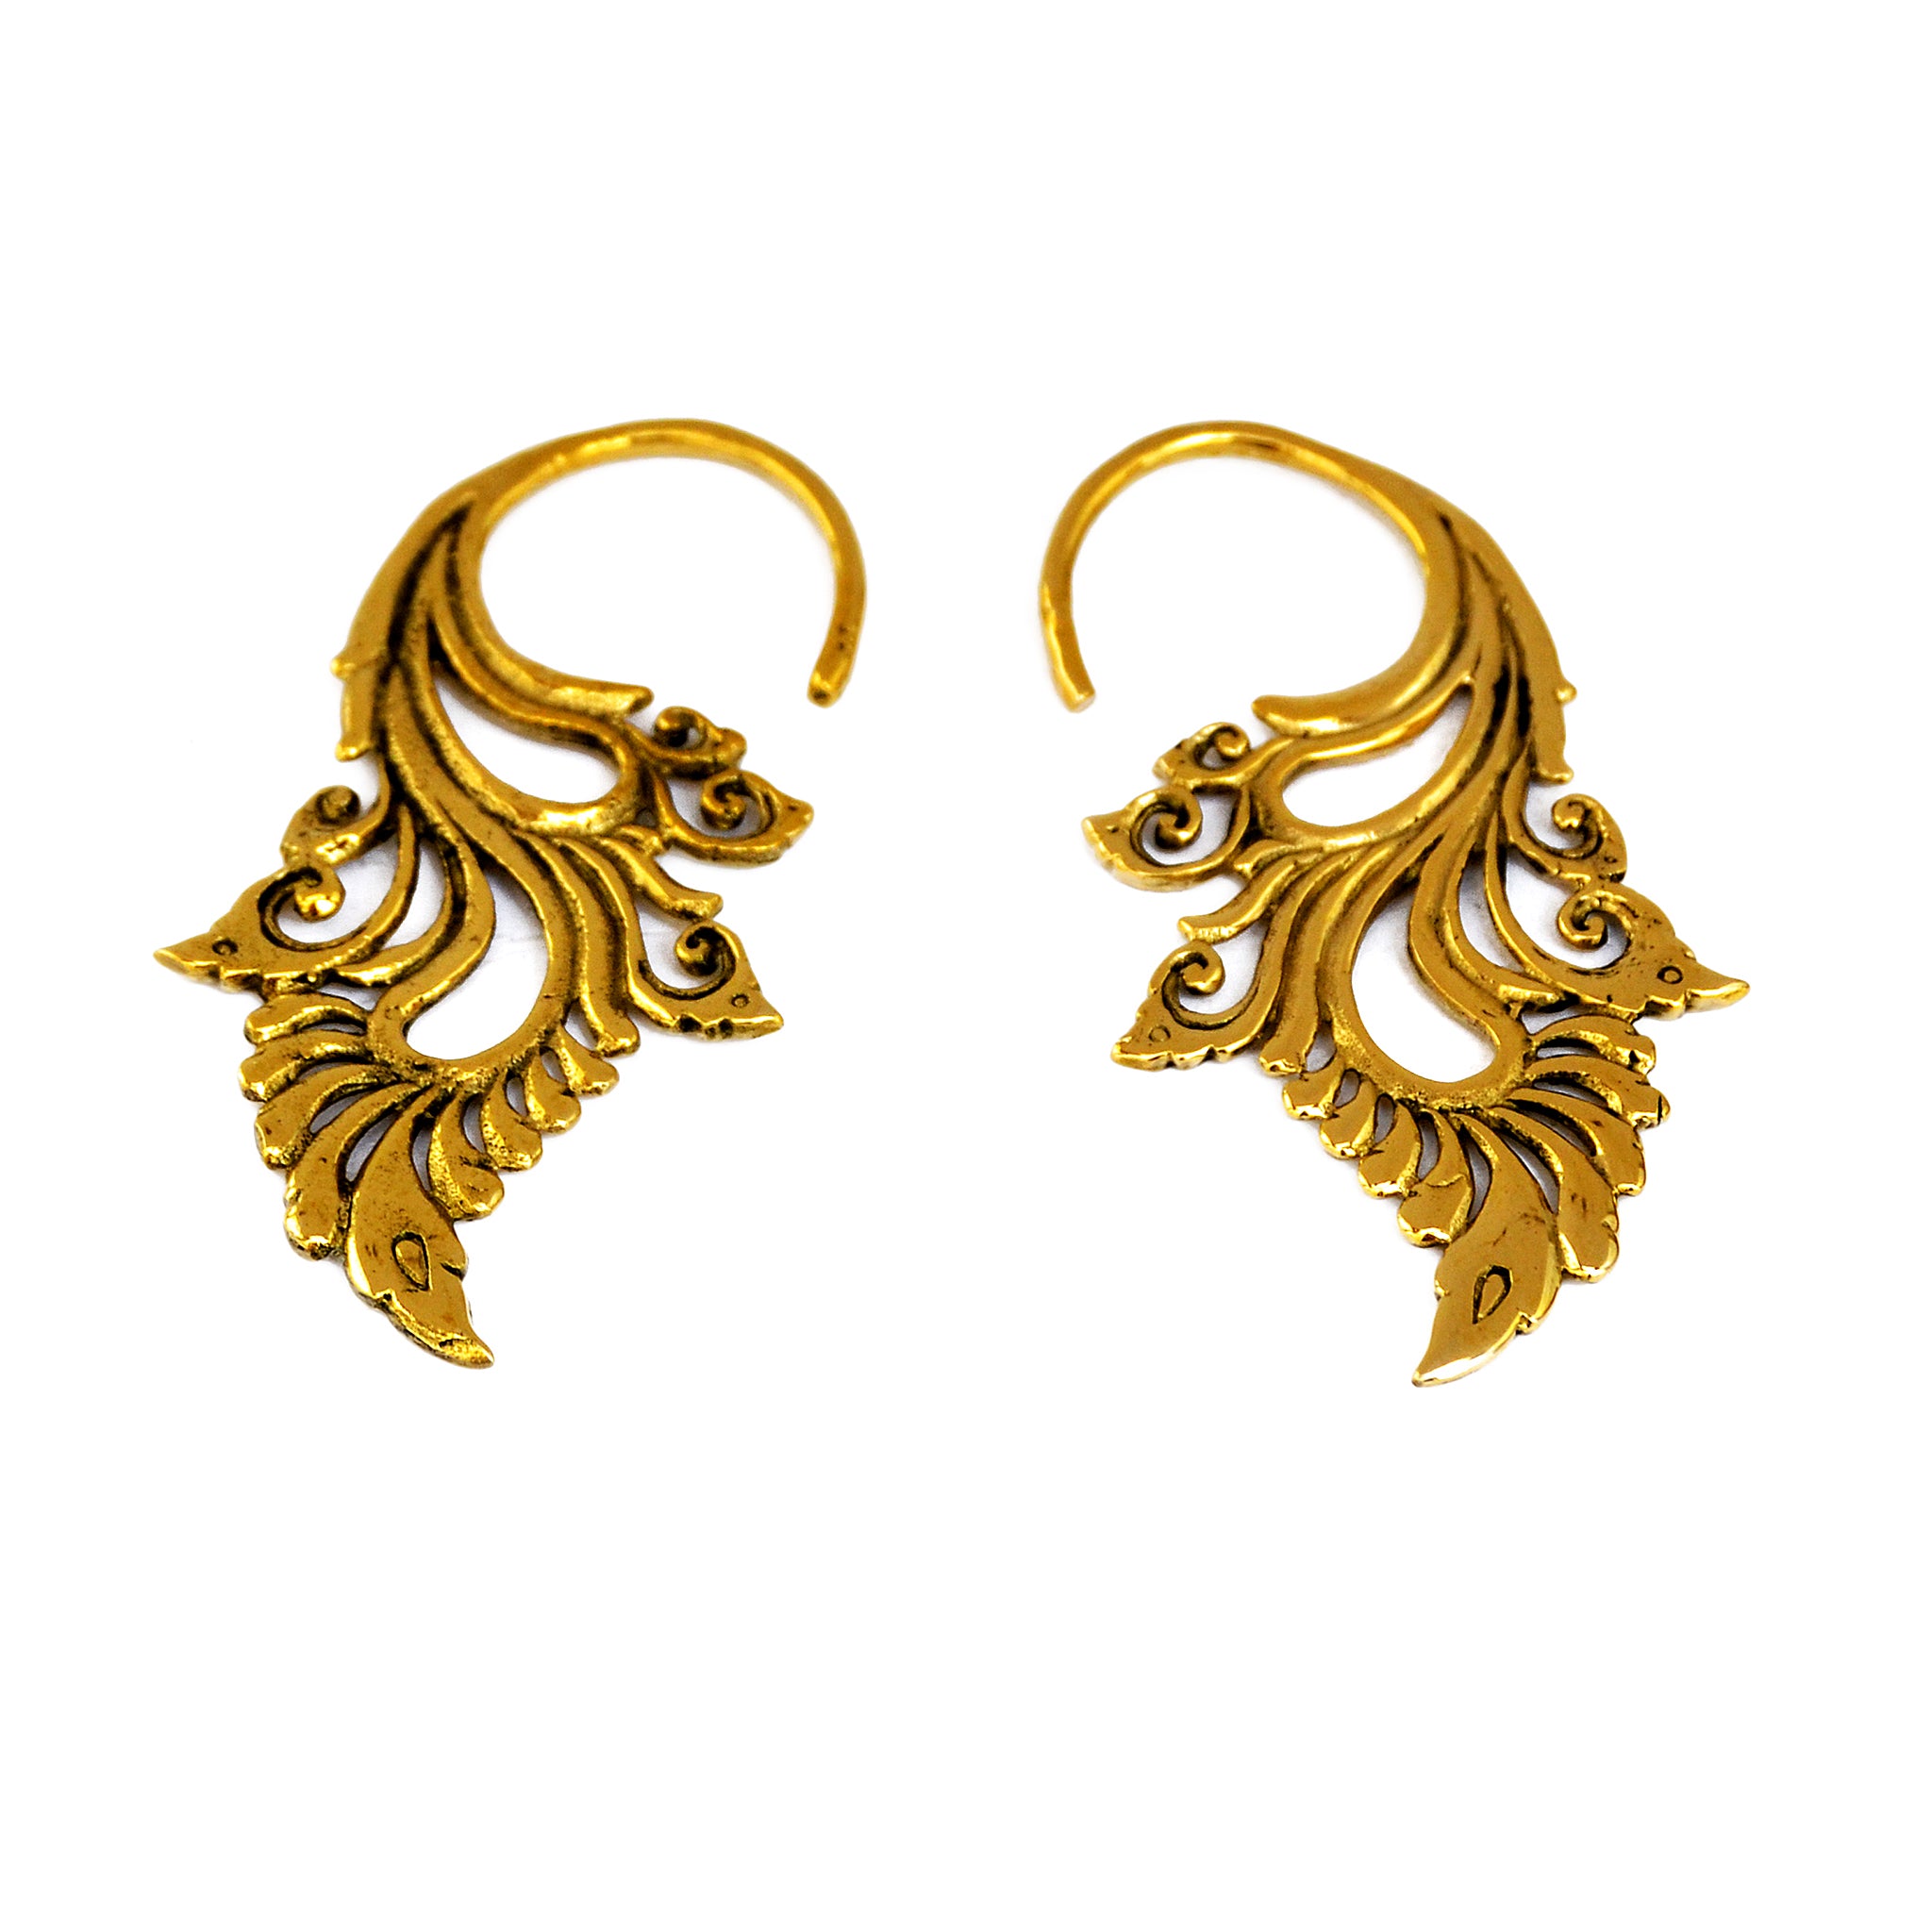 Gold wings earrings